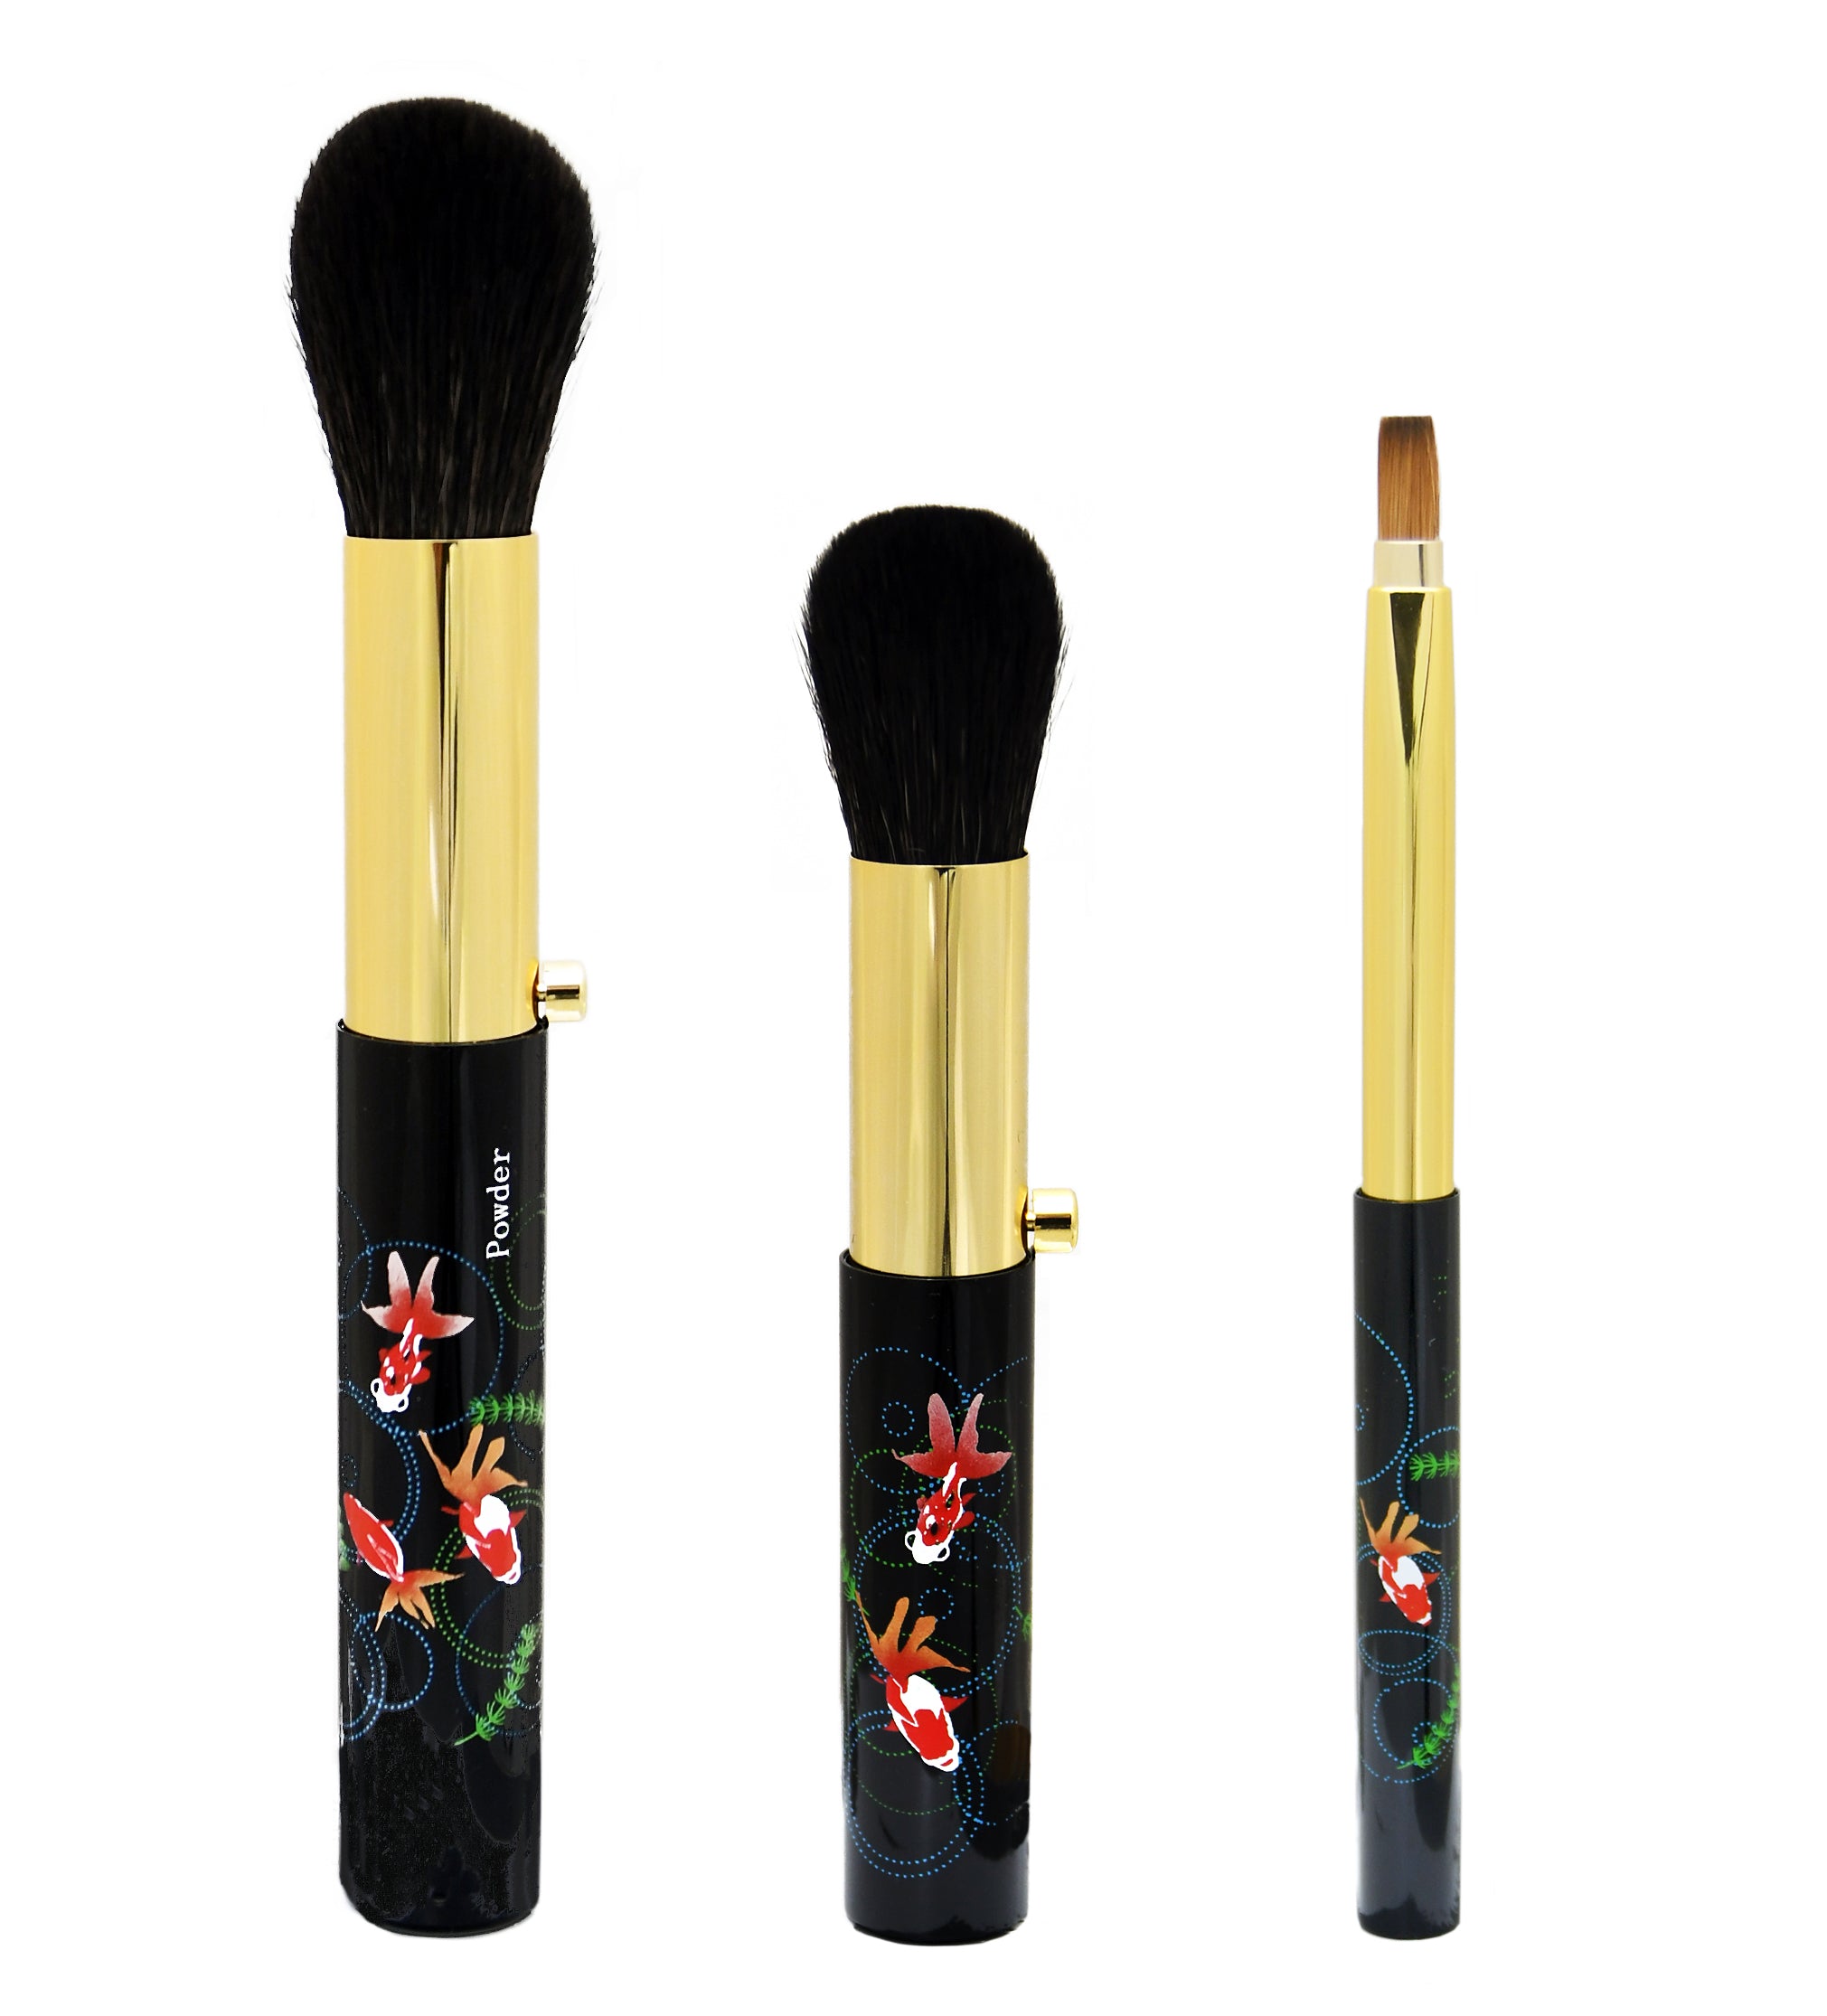 Kumanofude High-quality Makeup Brush Set with Makie — RESOBOX ONLINE STORE